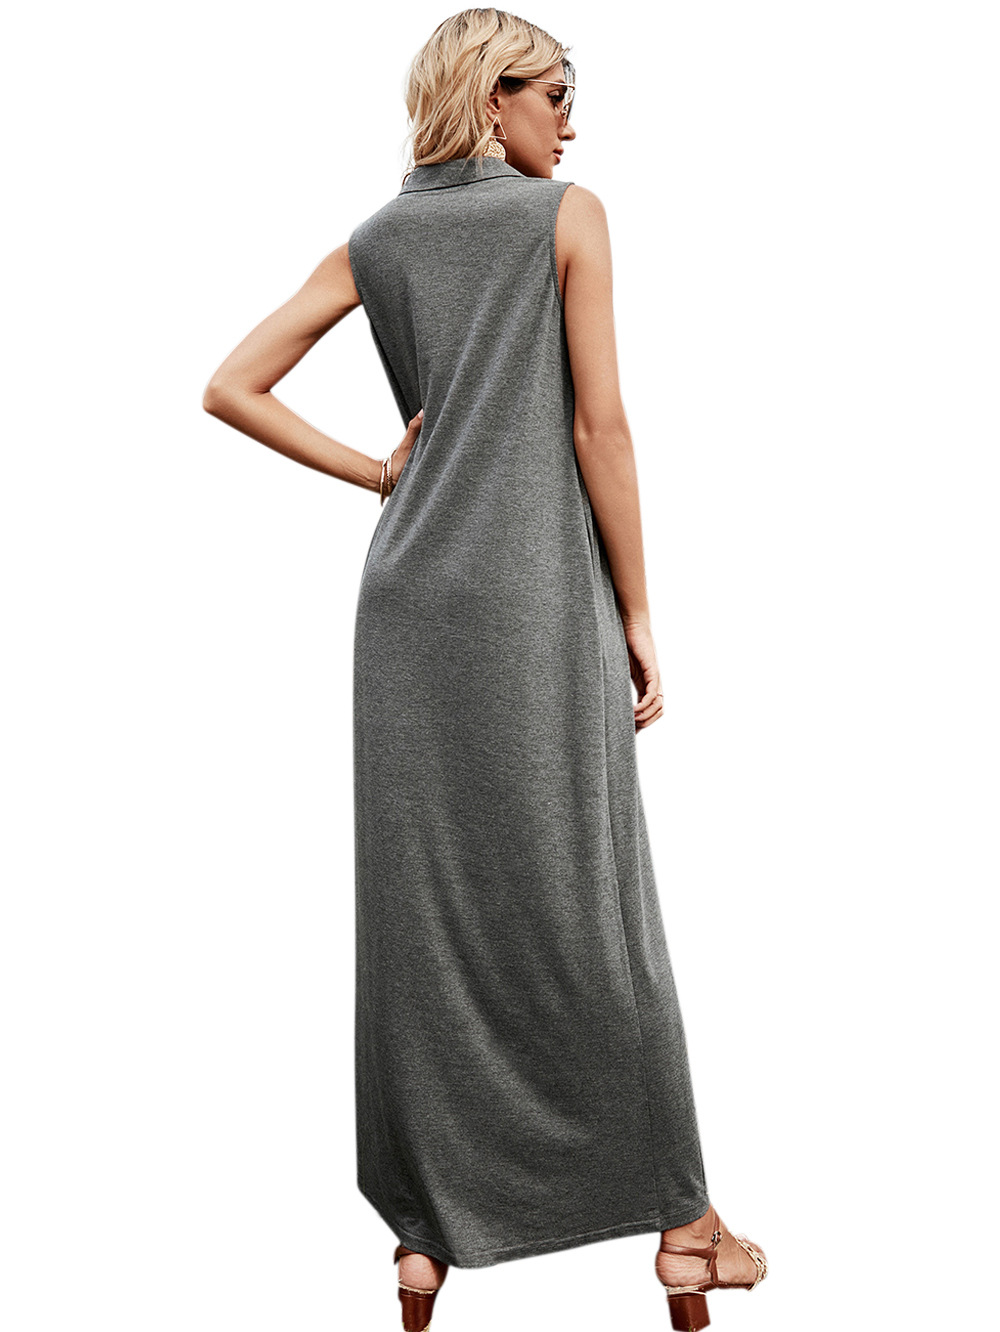 Casual spring lapel long sleeveless slim dress for women